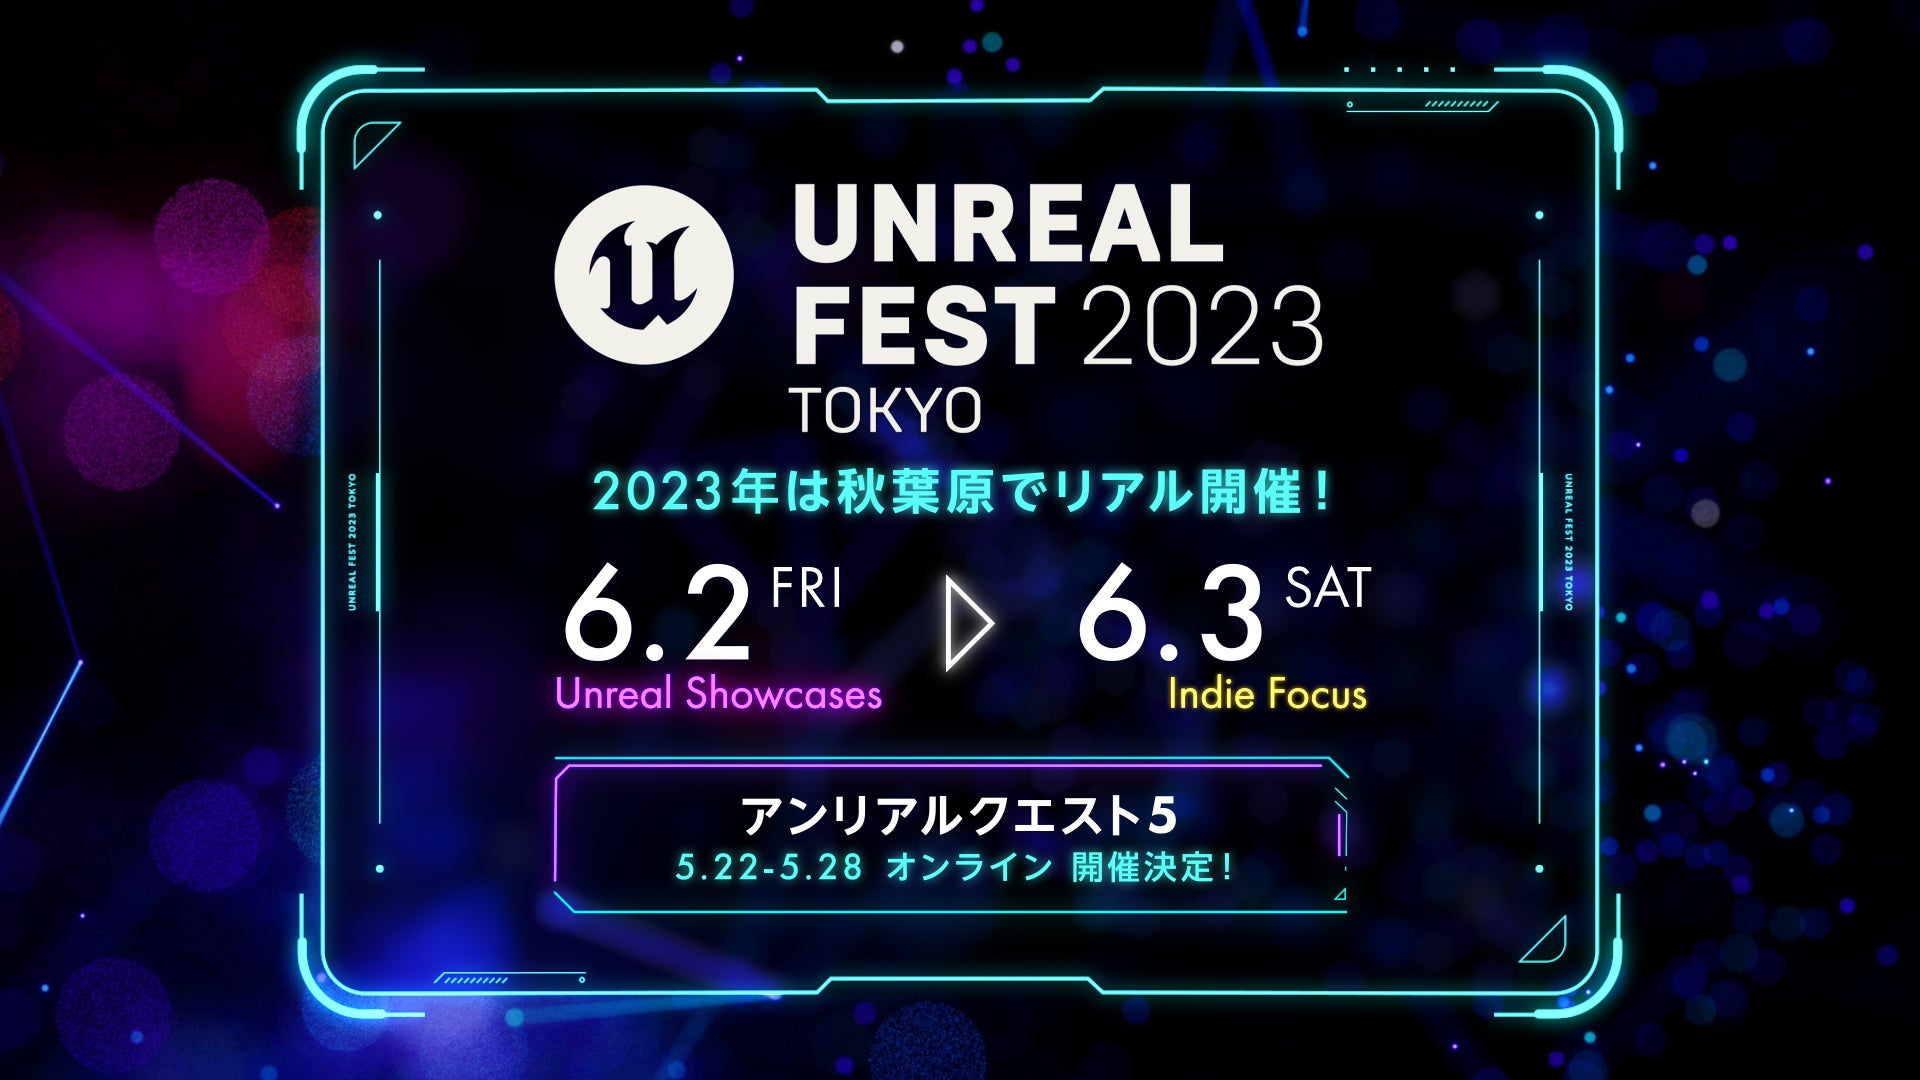 Epic Games 公式無料イベント「UNREAL FEST 2023 TOKYO」が6月2日(金)・3日(土)、東京・秋葉原で開催＆申込み受付開始！2日目は初のインディーゲーム中心のイベントに！